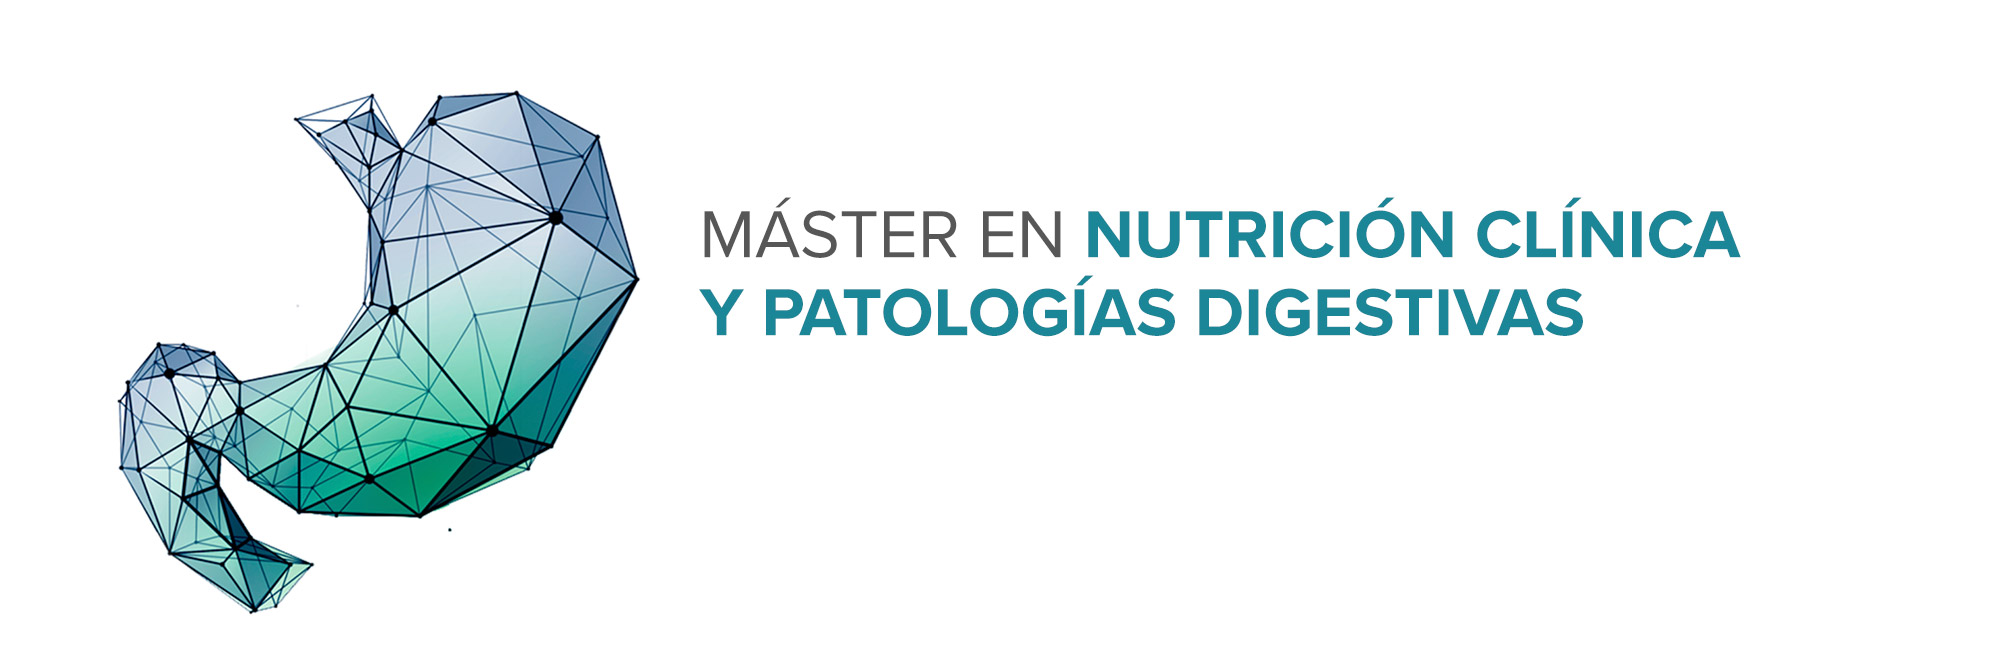 Máster en Nutrición Clínica y Patologías Digestivas (CLMASTERDIG2)